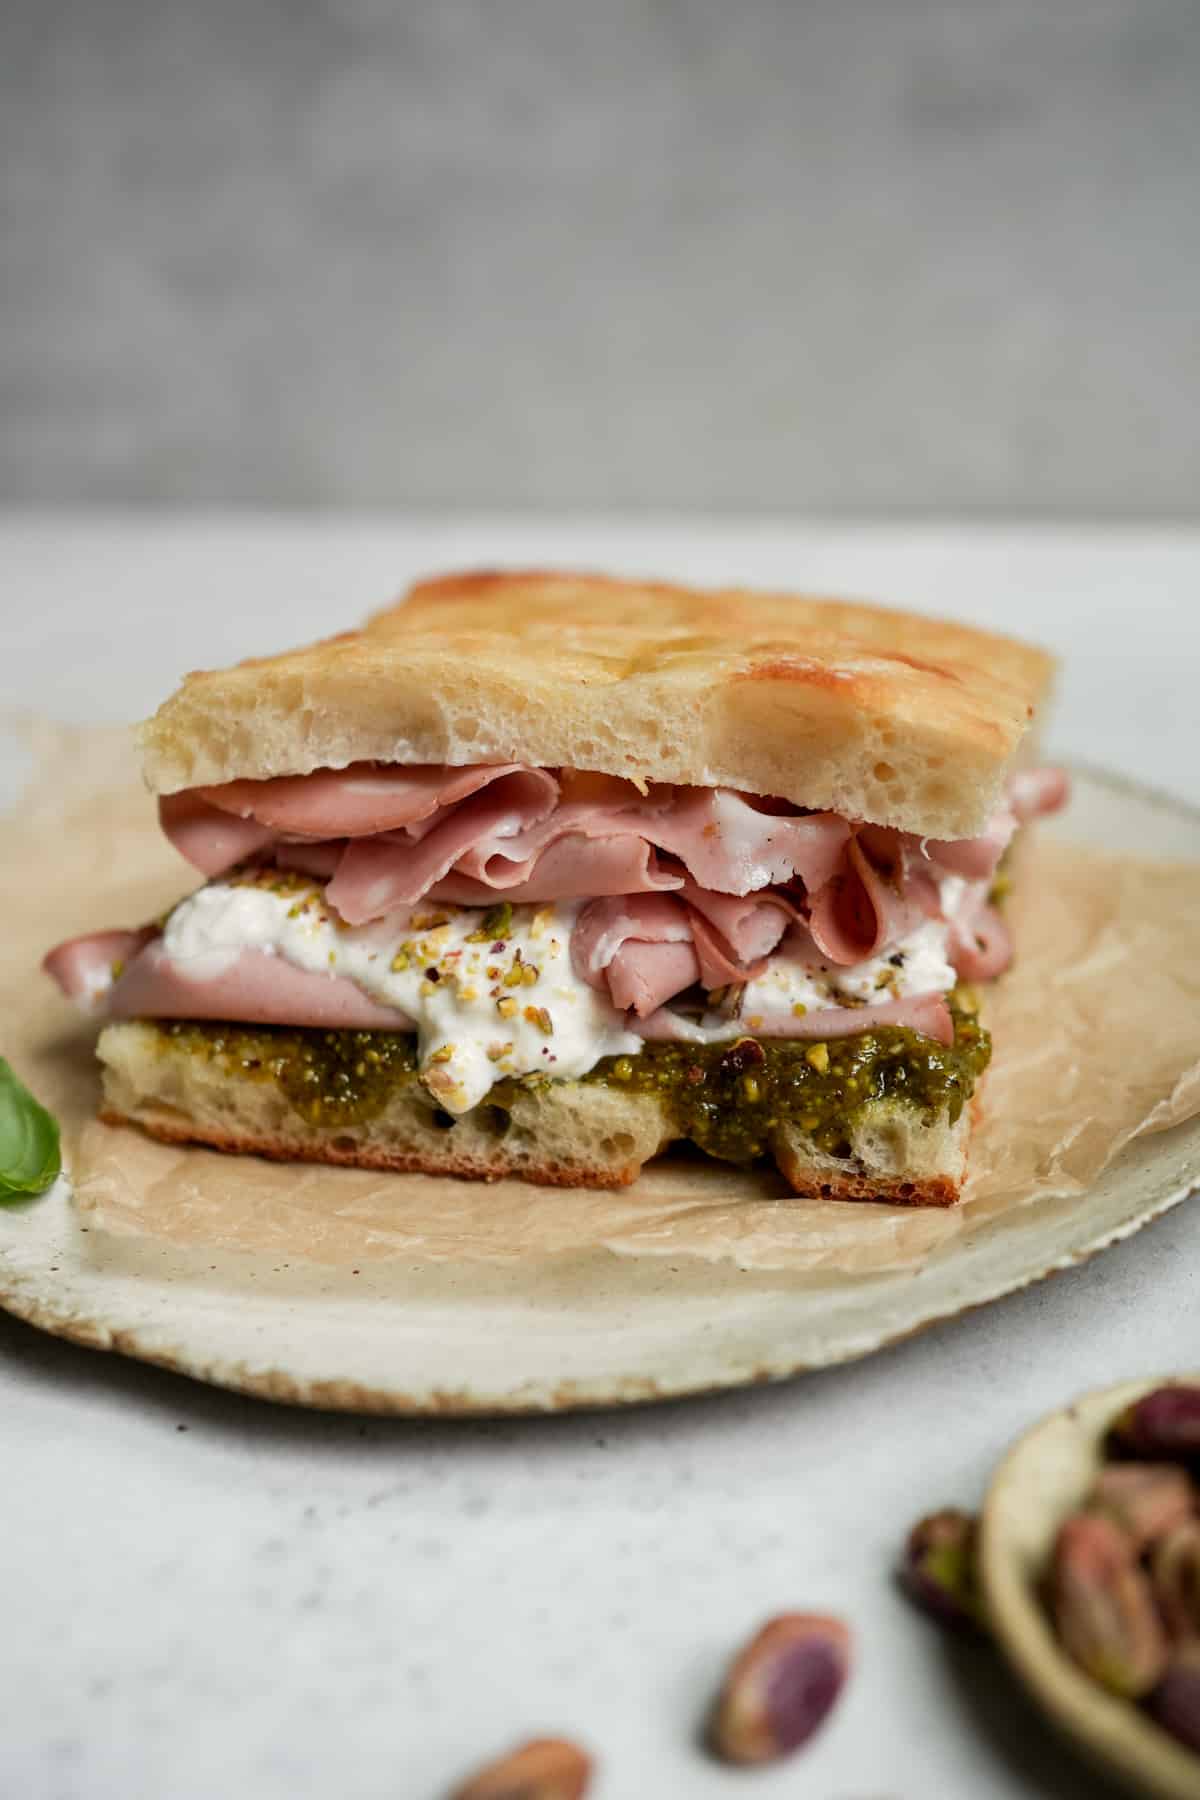 A mortadella sandwich with pistachio pesto and burrata on a plate